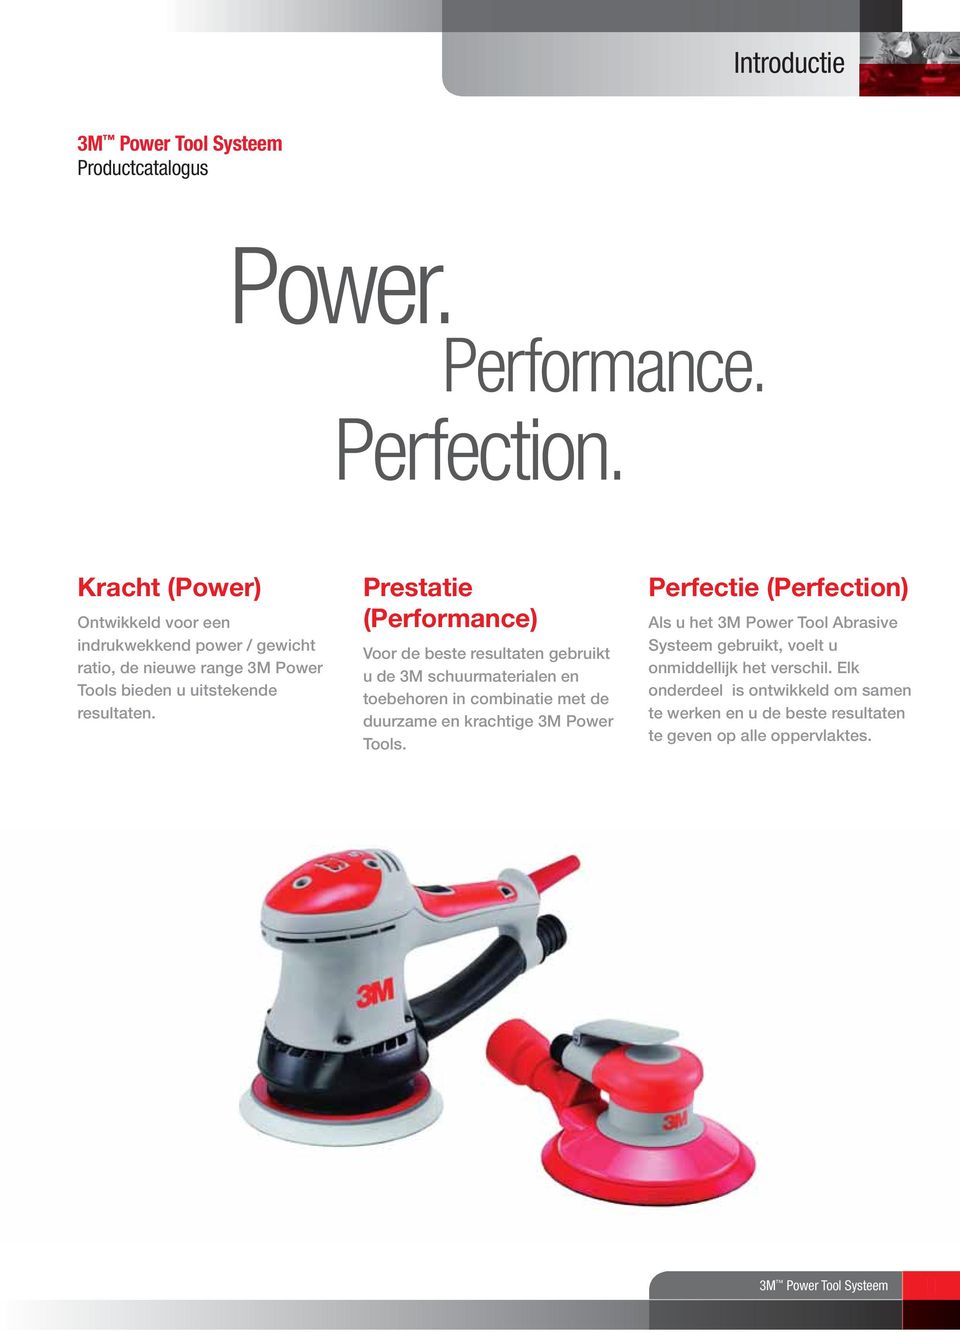 Prestatie (Performance) Voor de beste resultaten gebruikt u de 3M schuurmaterialen en toebehoren in combinatie met de duurzame en krachtige 3M Power